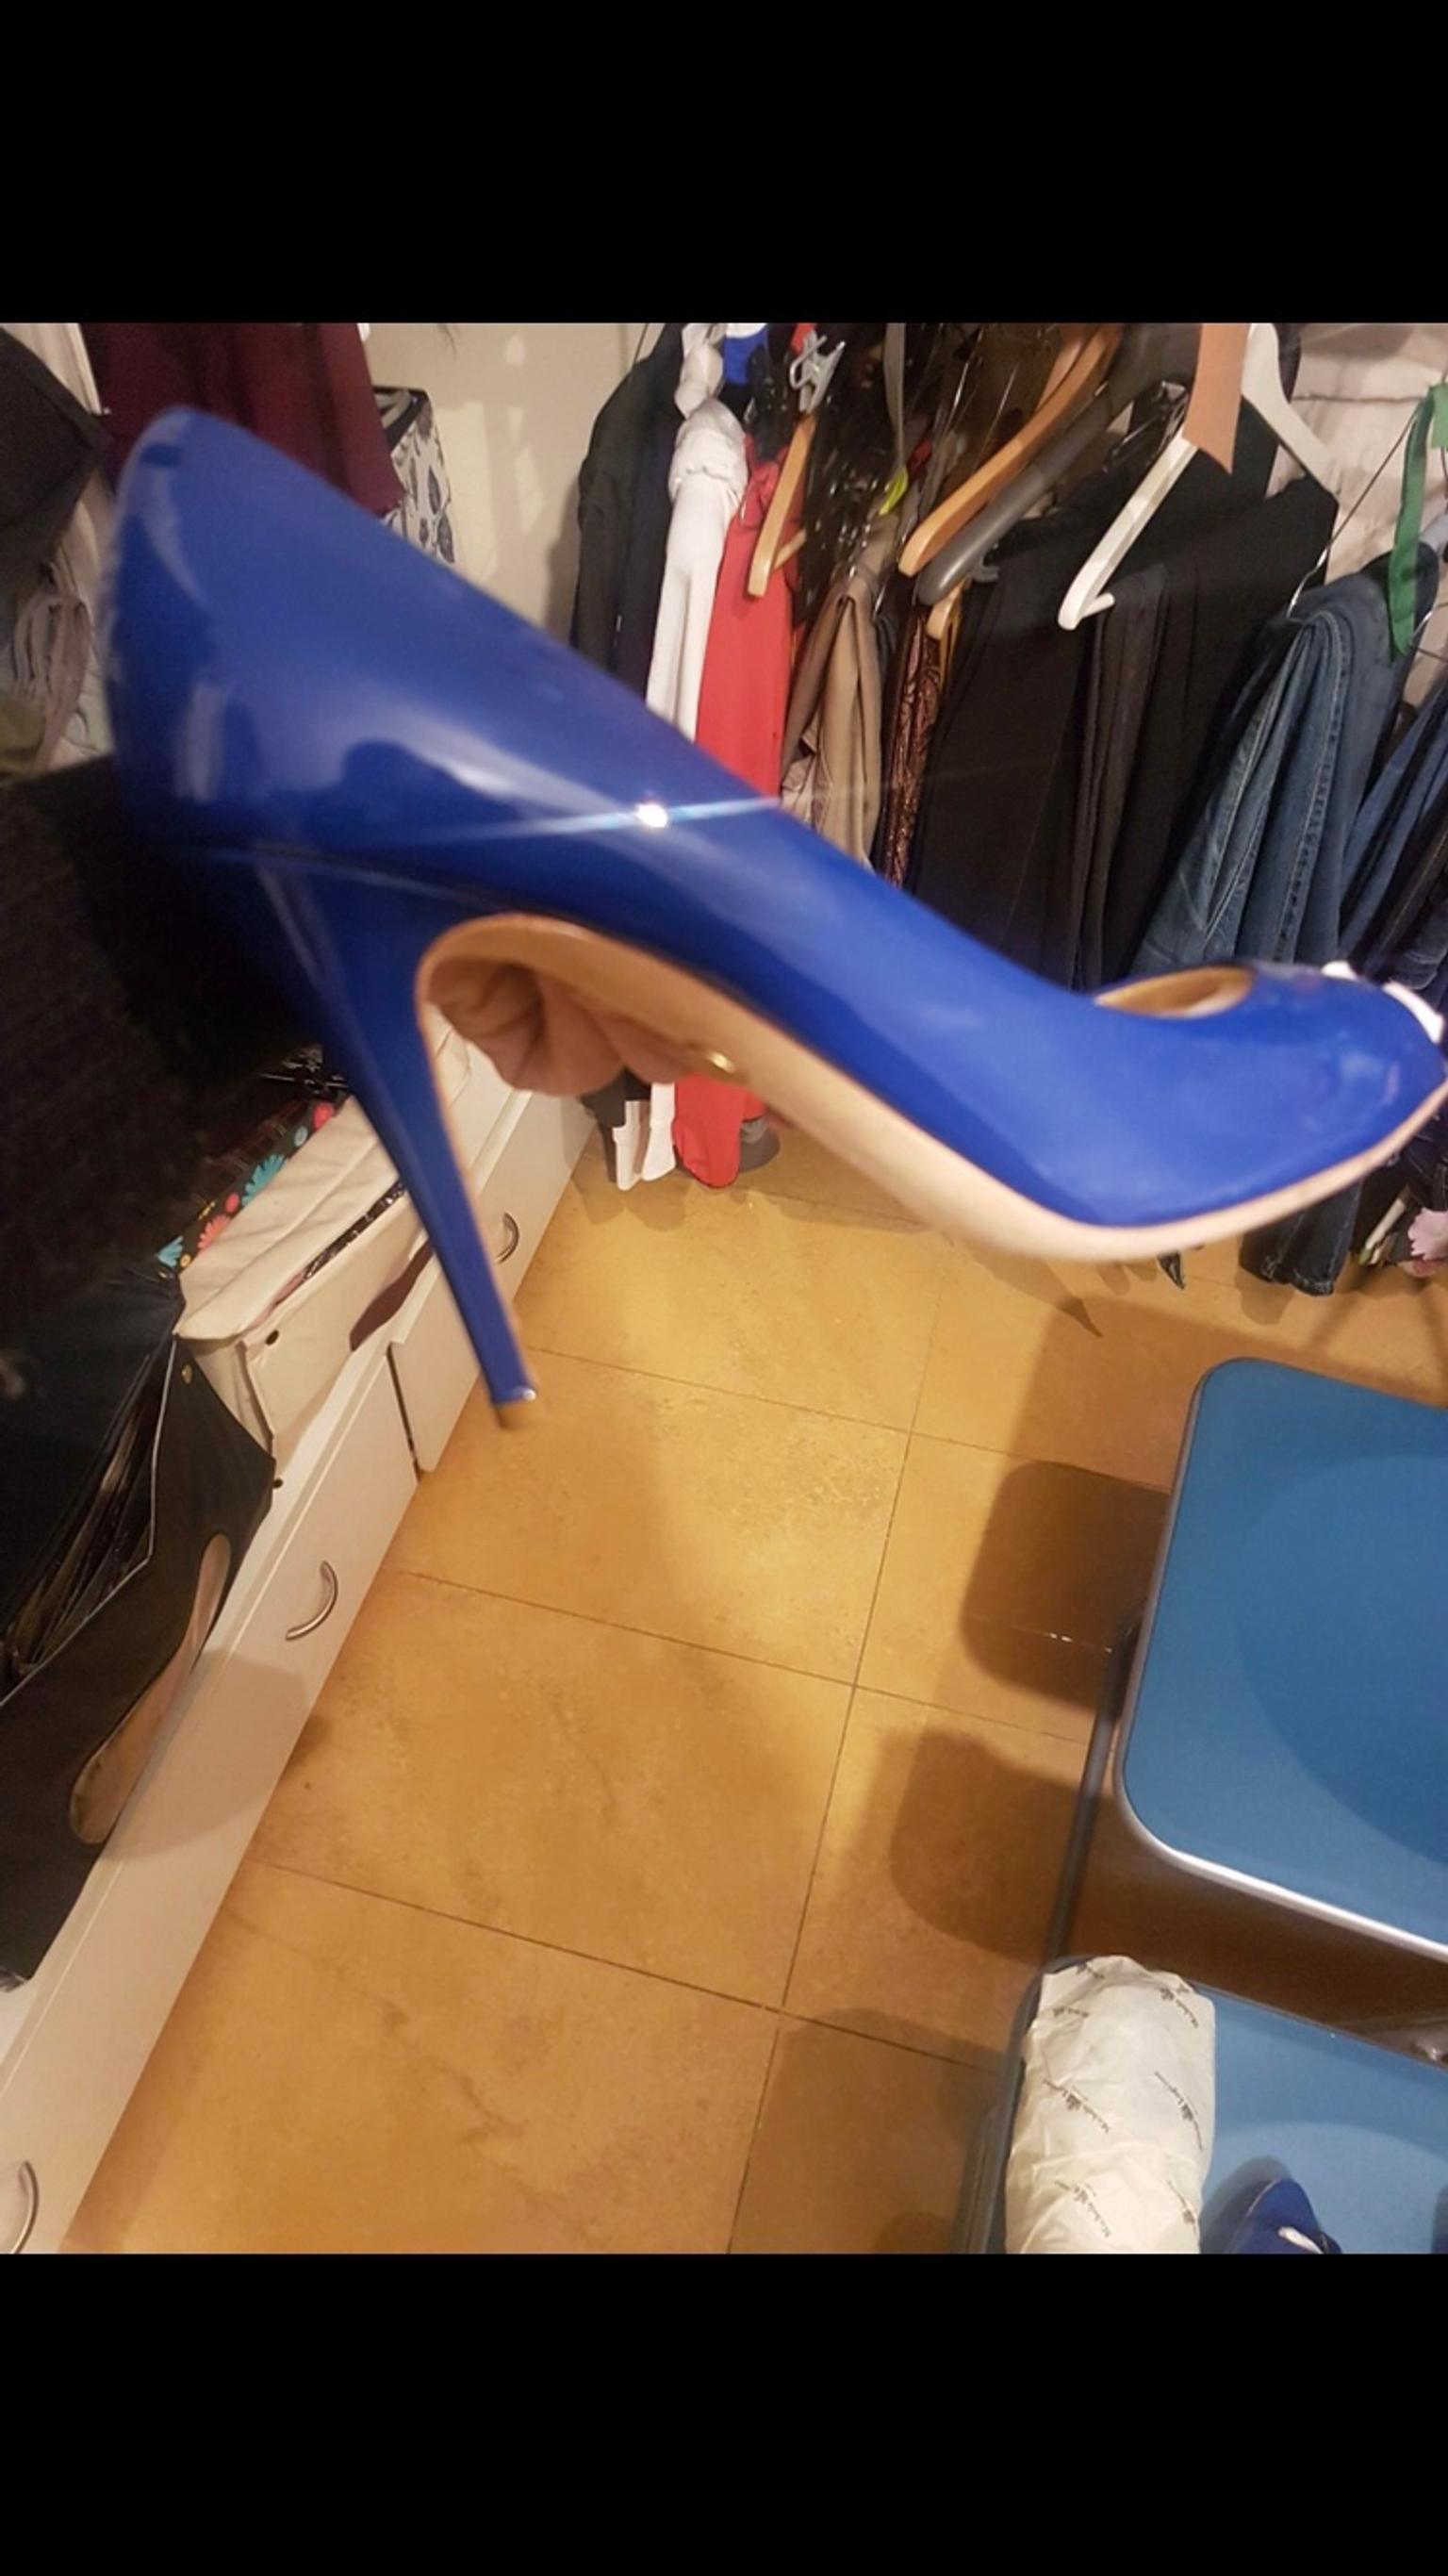 emilio pucci women's shoes